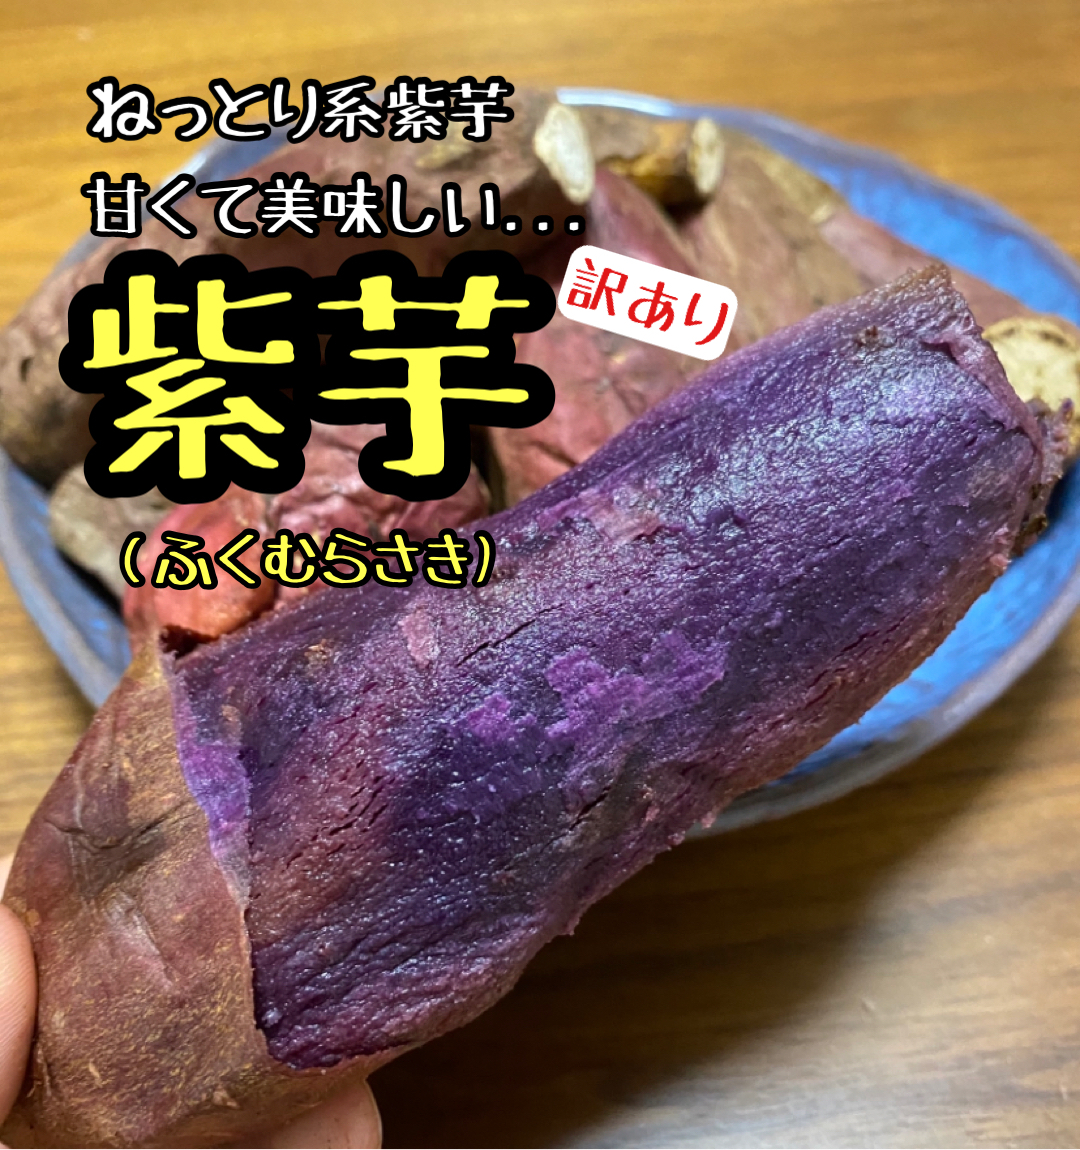 【訳あり】ふくむらさき 10キロ 紫芋 さつまいも